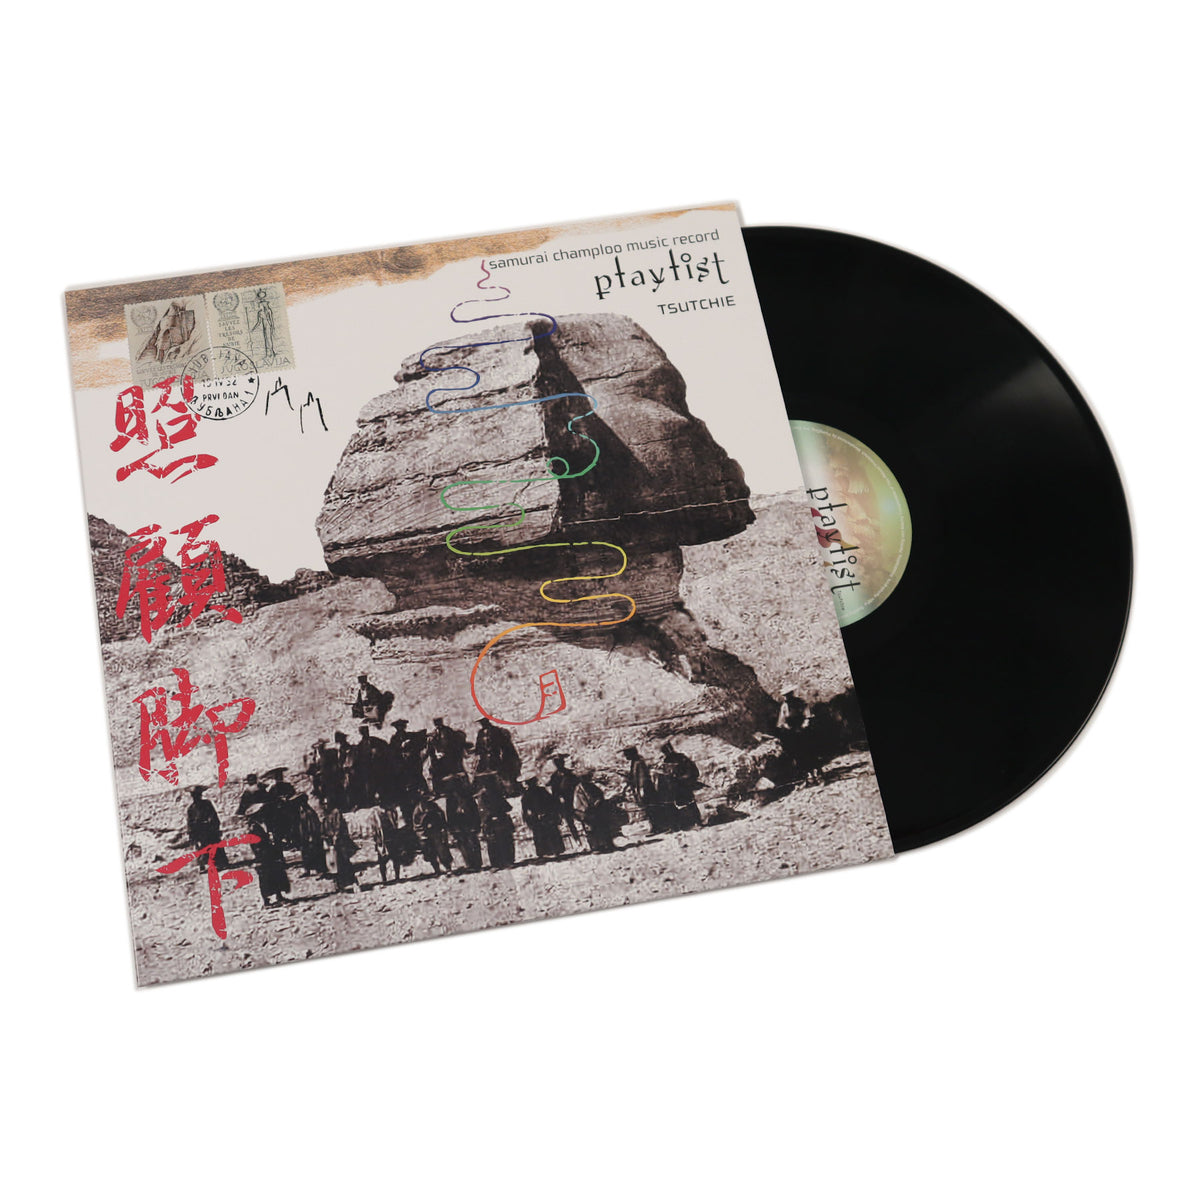 samurai champloo music record レコード 4枚セット